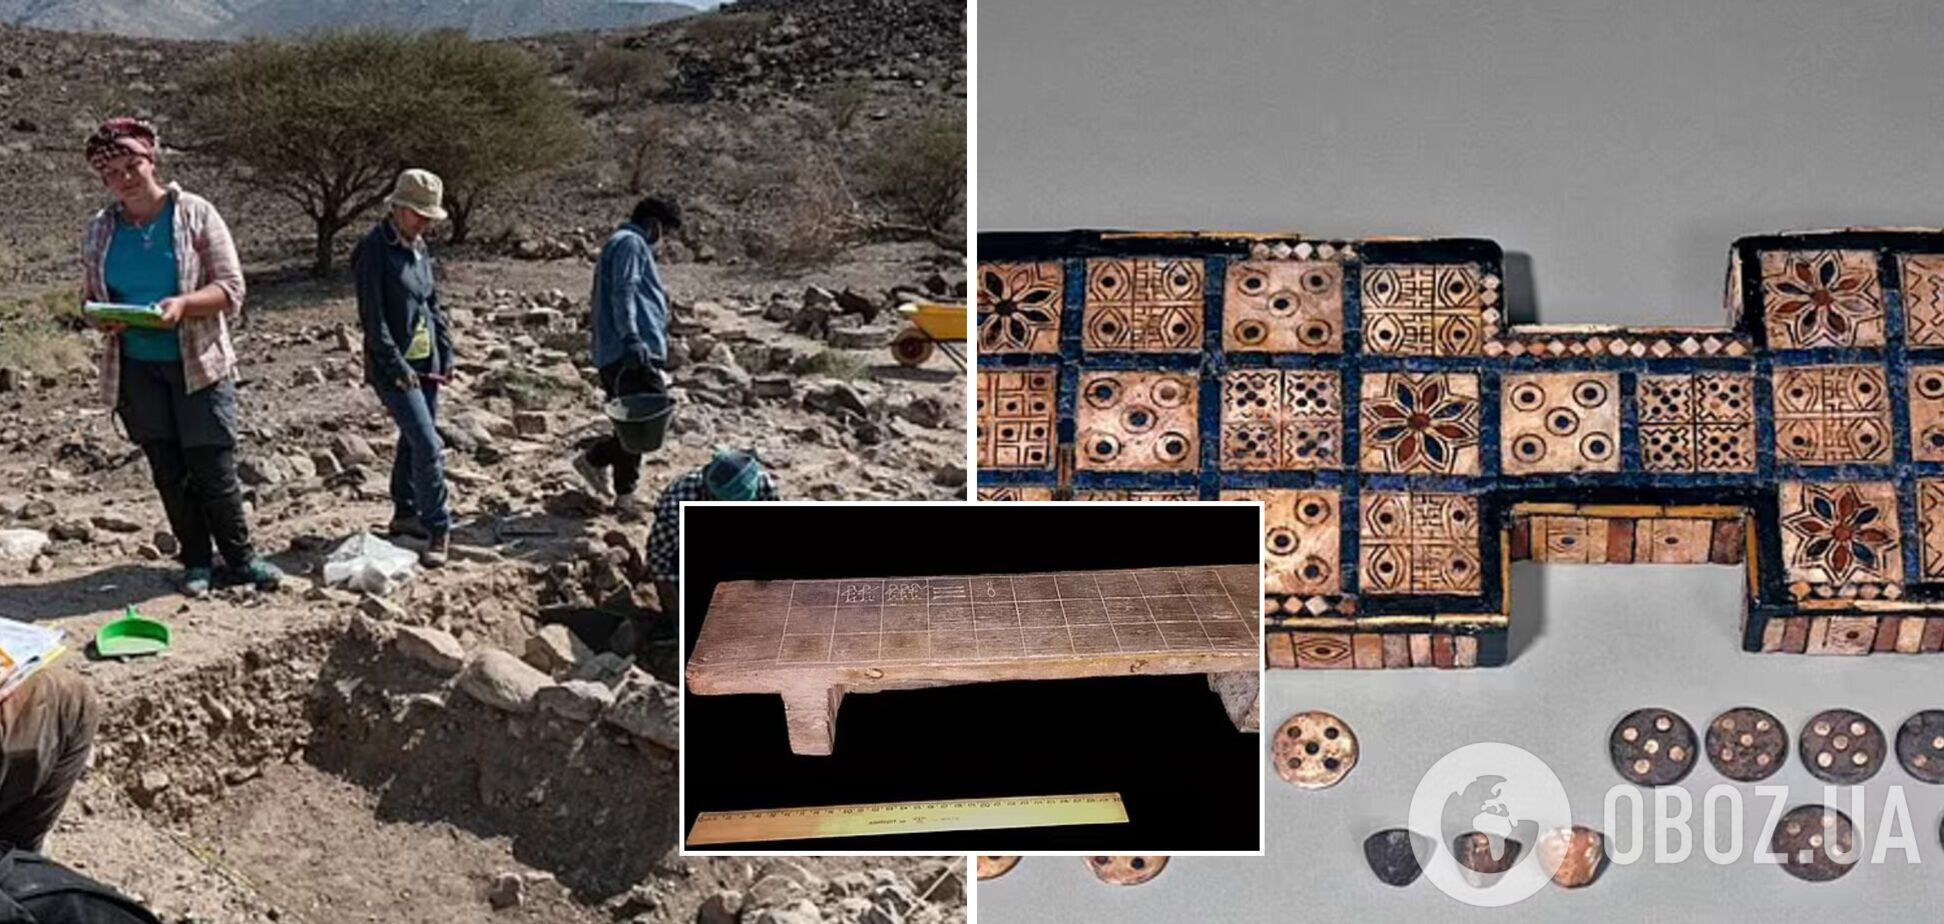 Археологи обнаружили в пустыне Омана настольную игру, которой 4 тыс. лет. Фото